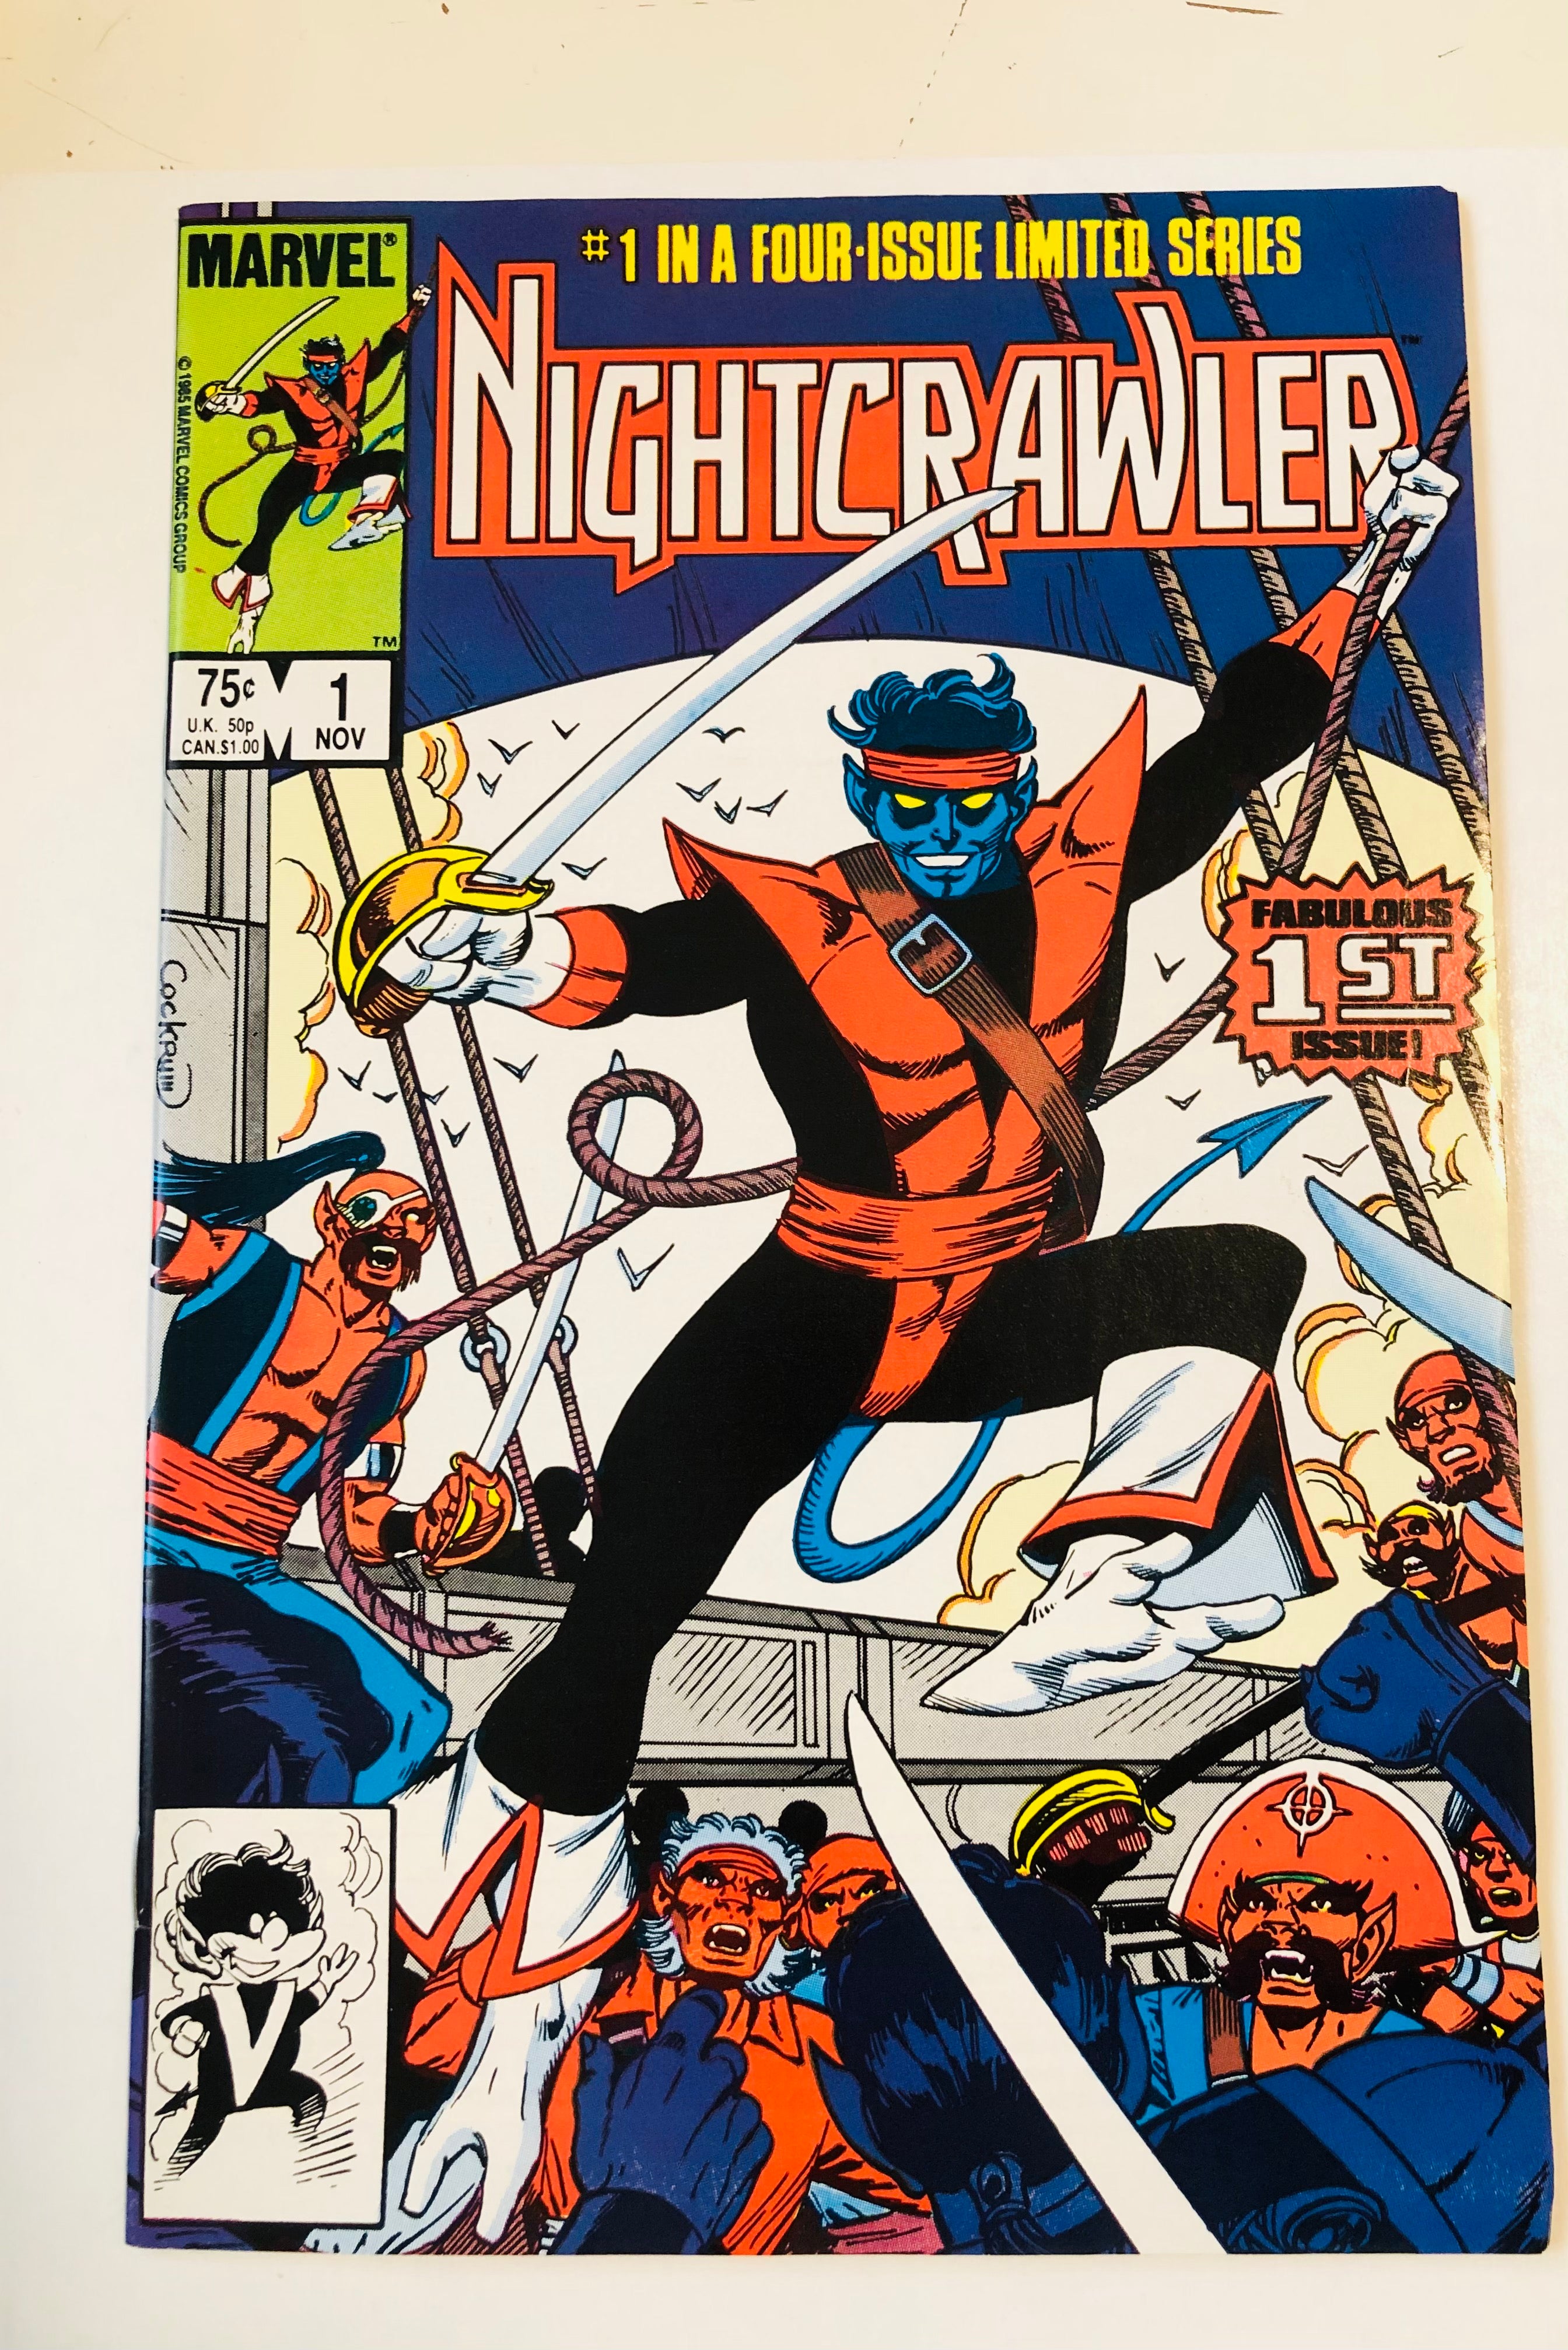 Night crawler #1 comic book